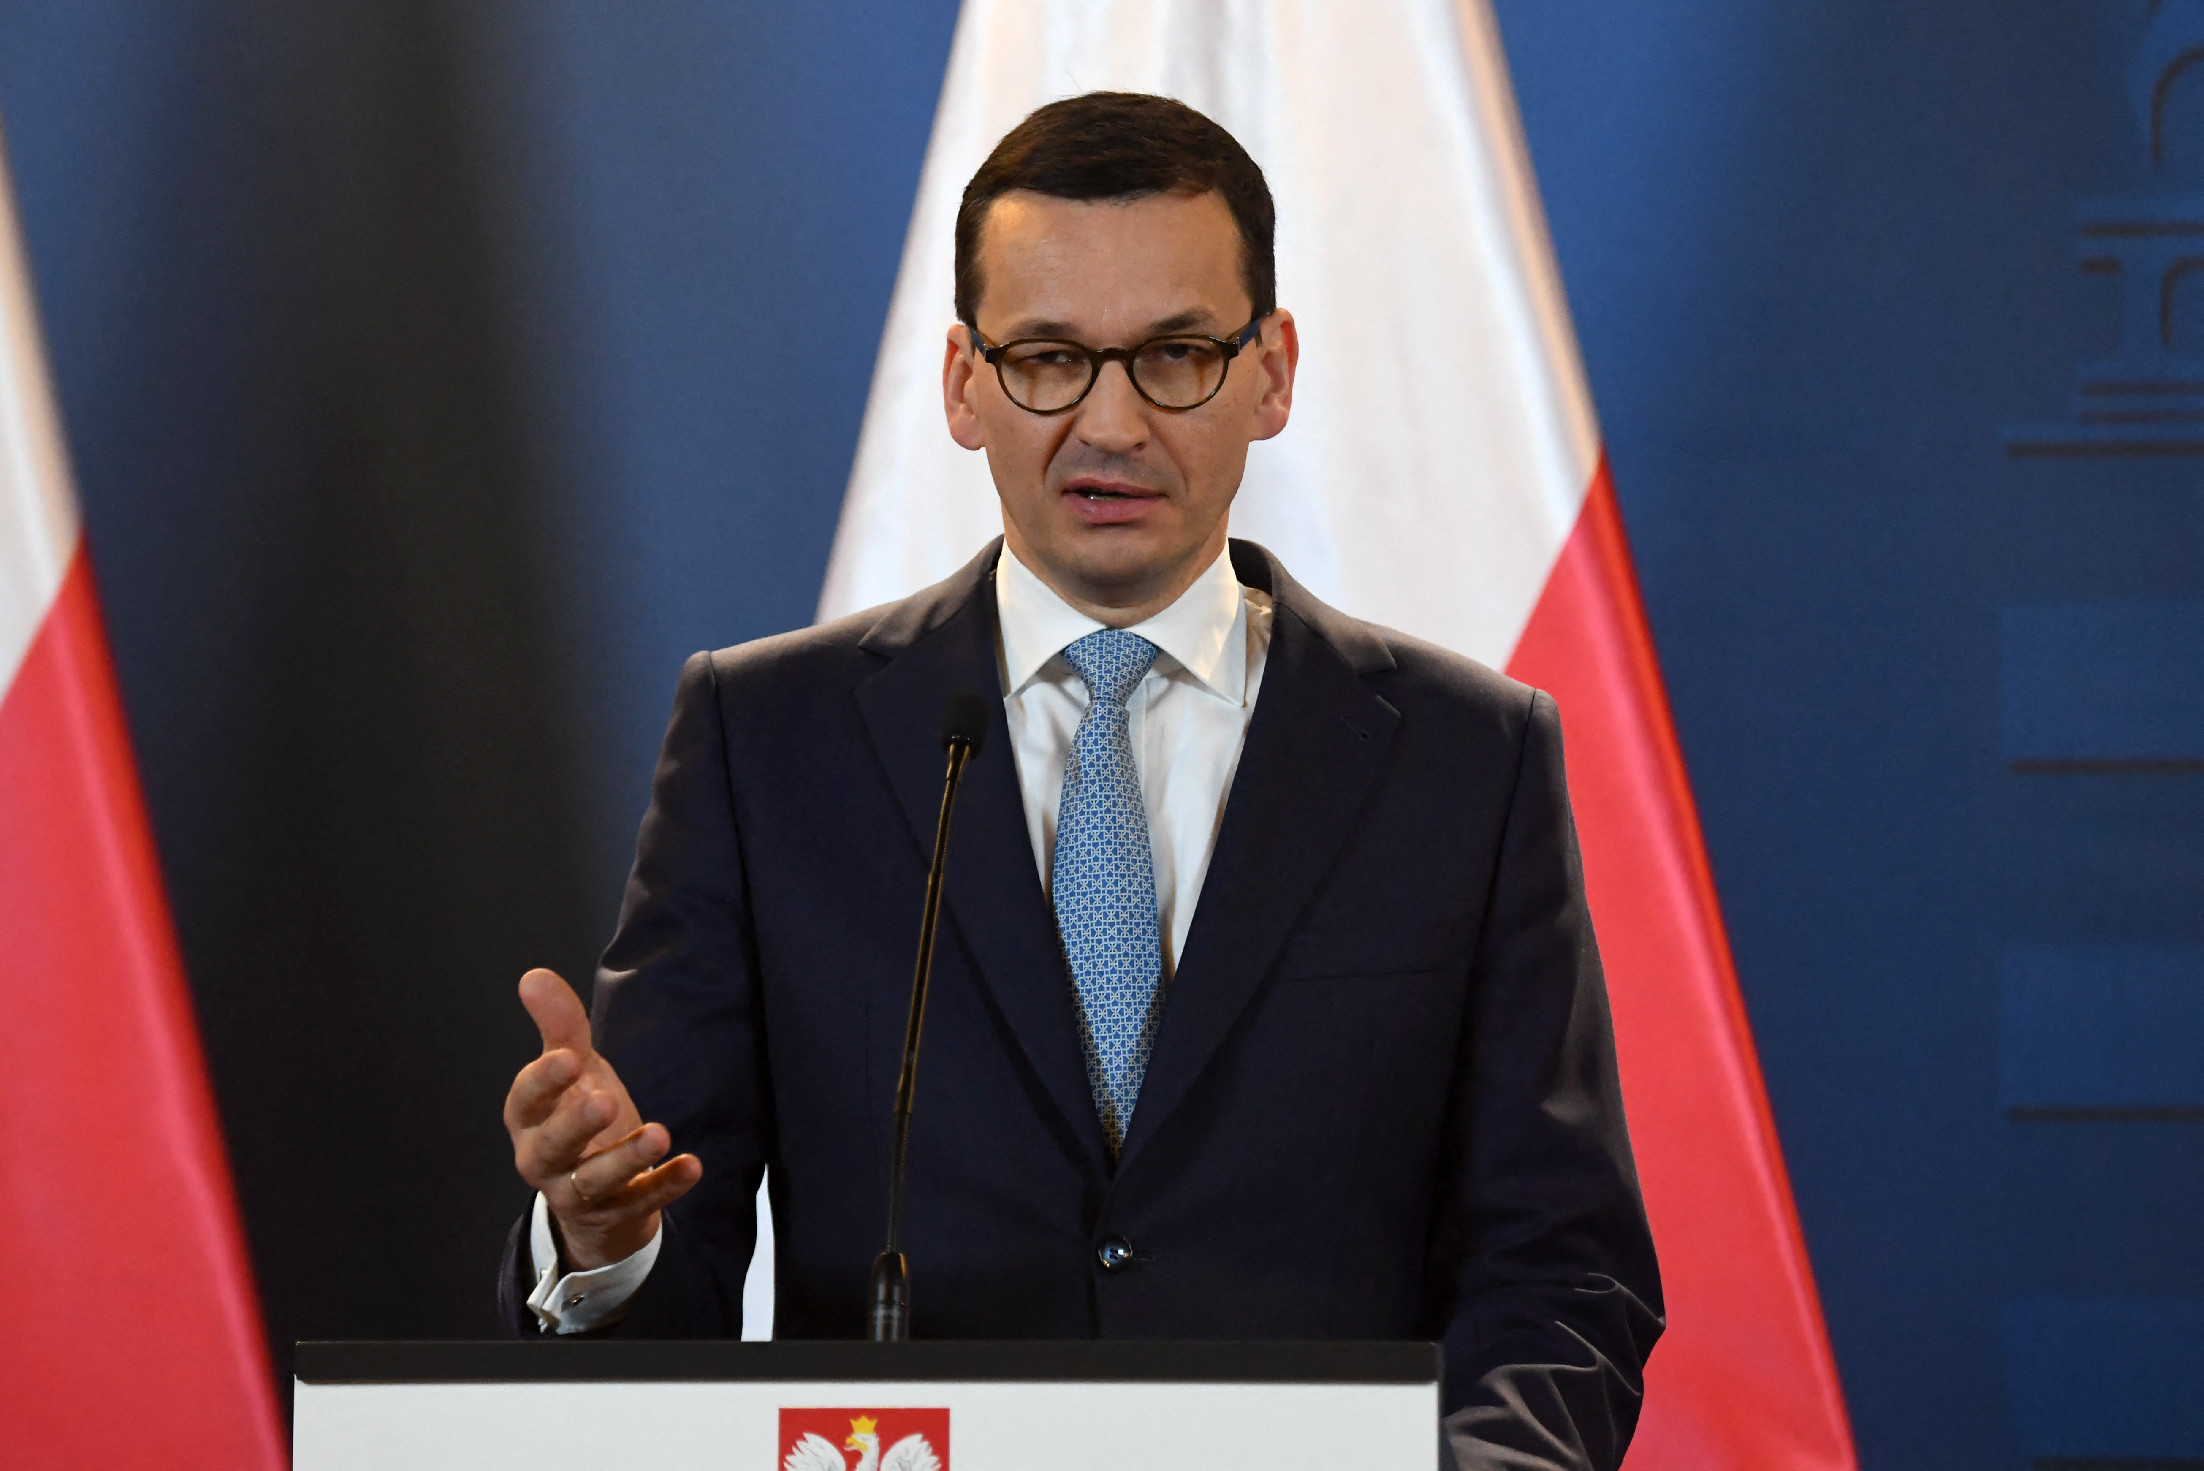 Orosz-ukrán háború: a lengyel miniszterelnök attól tart, hogy a keleti uniós államok következnek